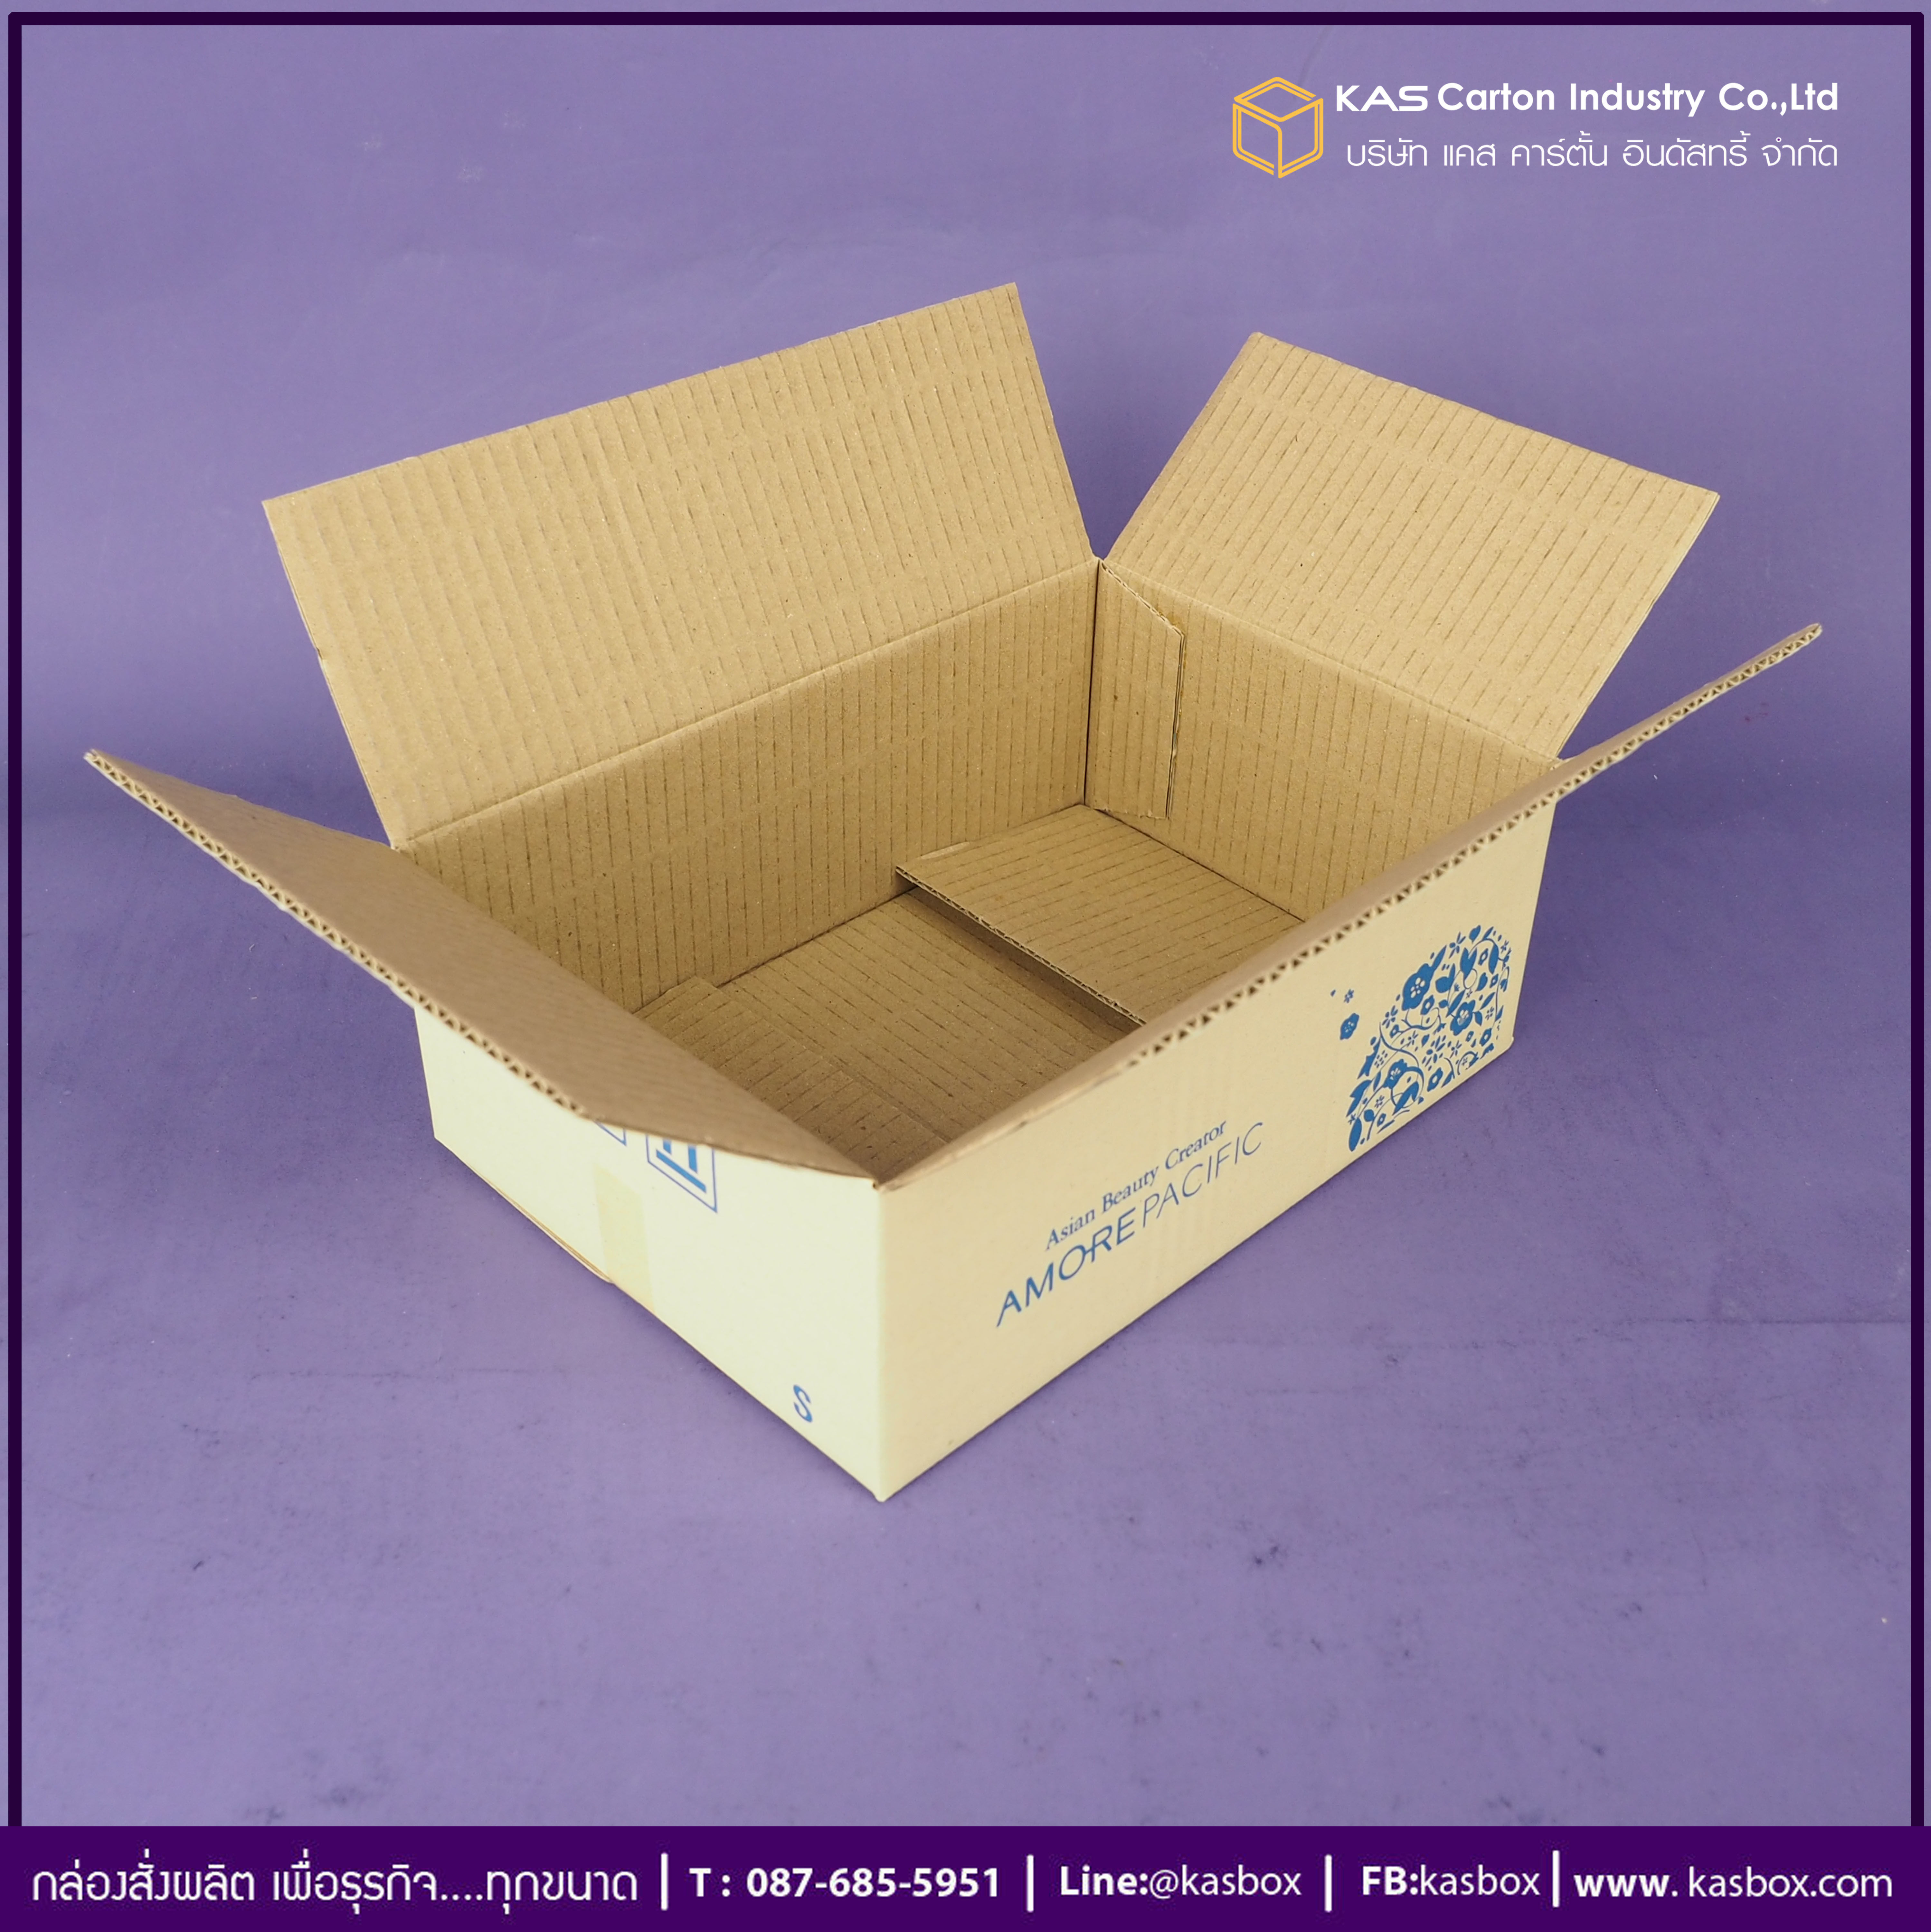 กล่องลูกฟูก สำเร็จรูป และ สั่งผลิต ตามความต้องการลูกค้า กล่องกระดาษลูกฟูก กล่องใส่เครื่องสำอางค์